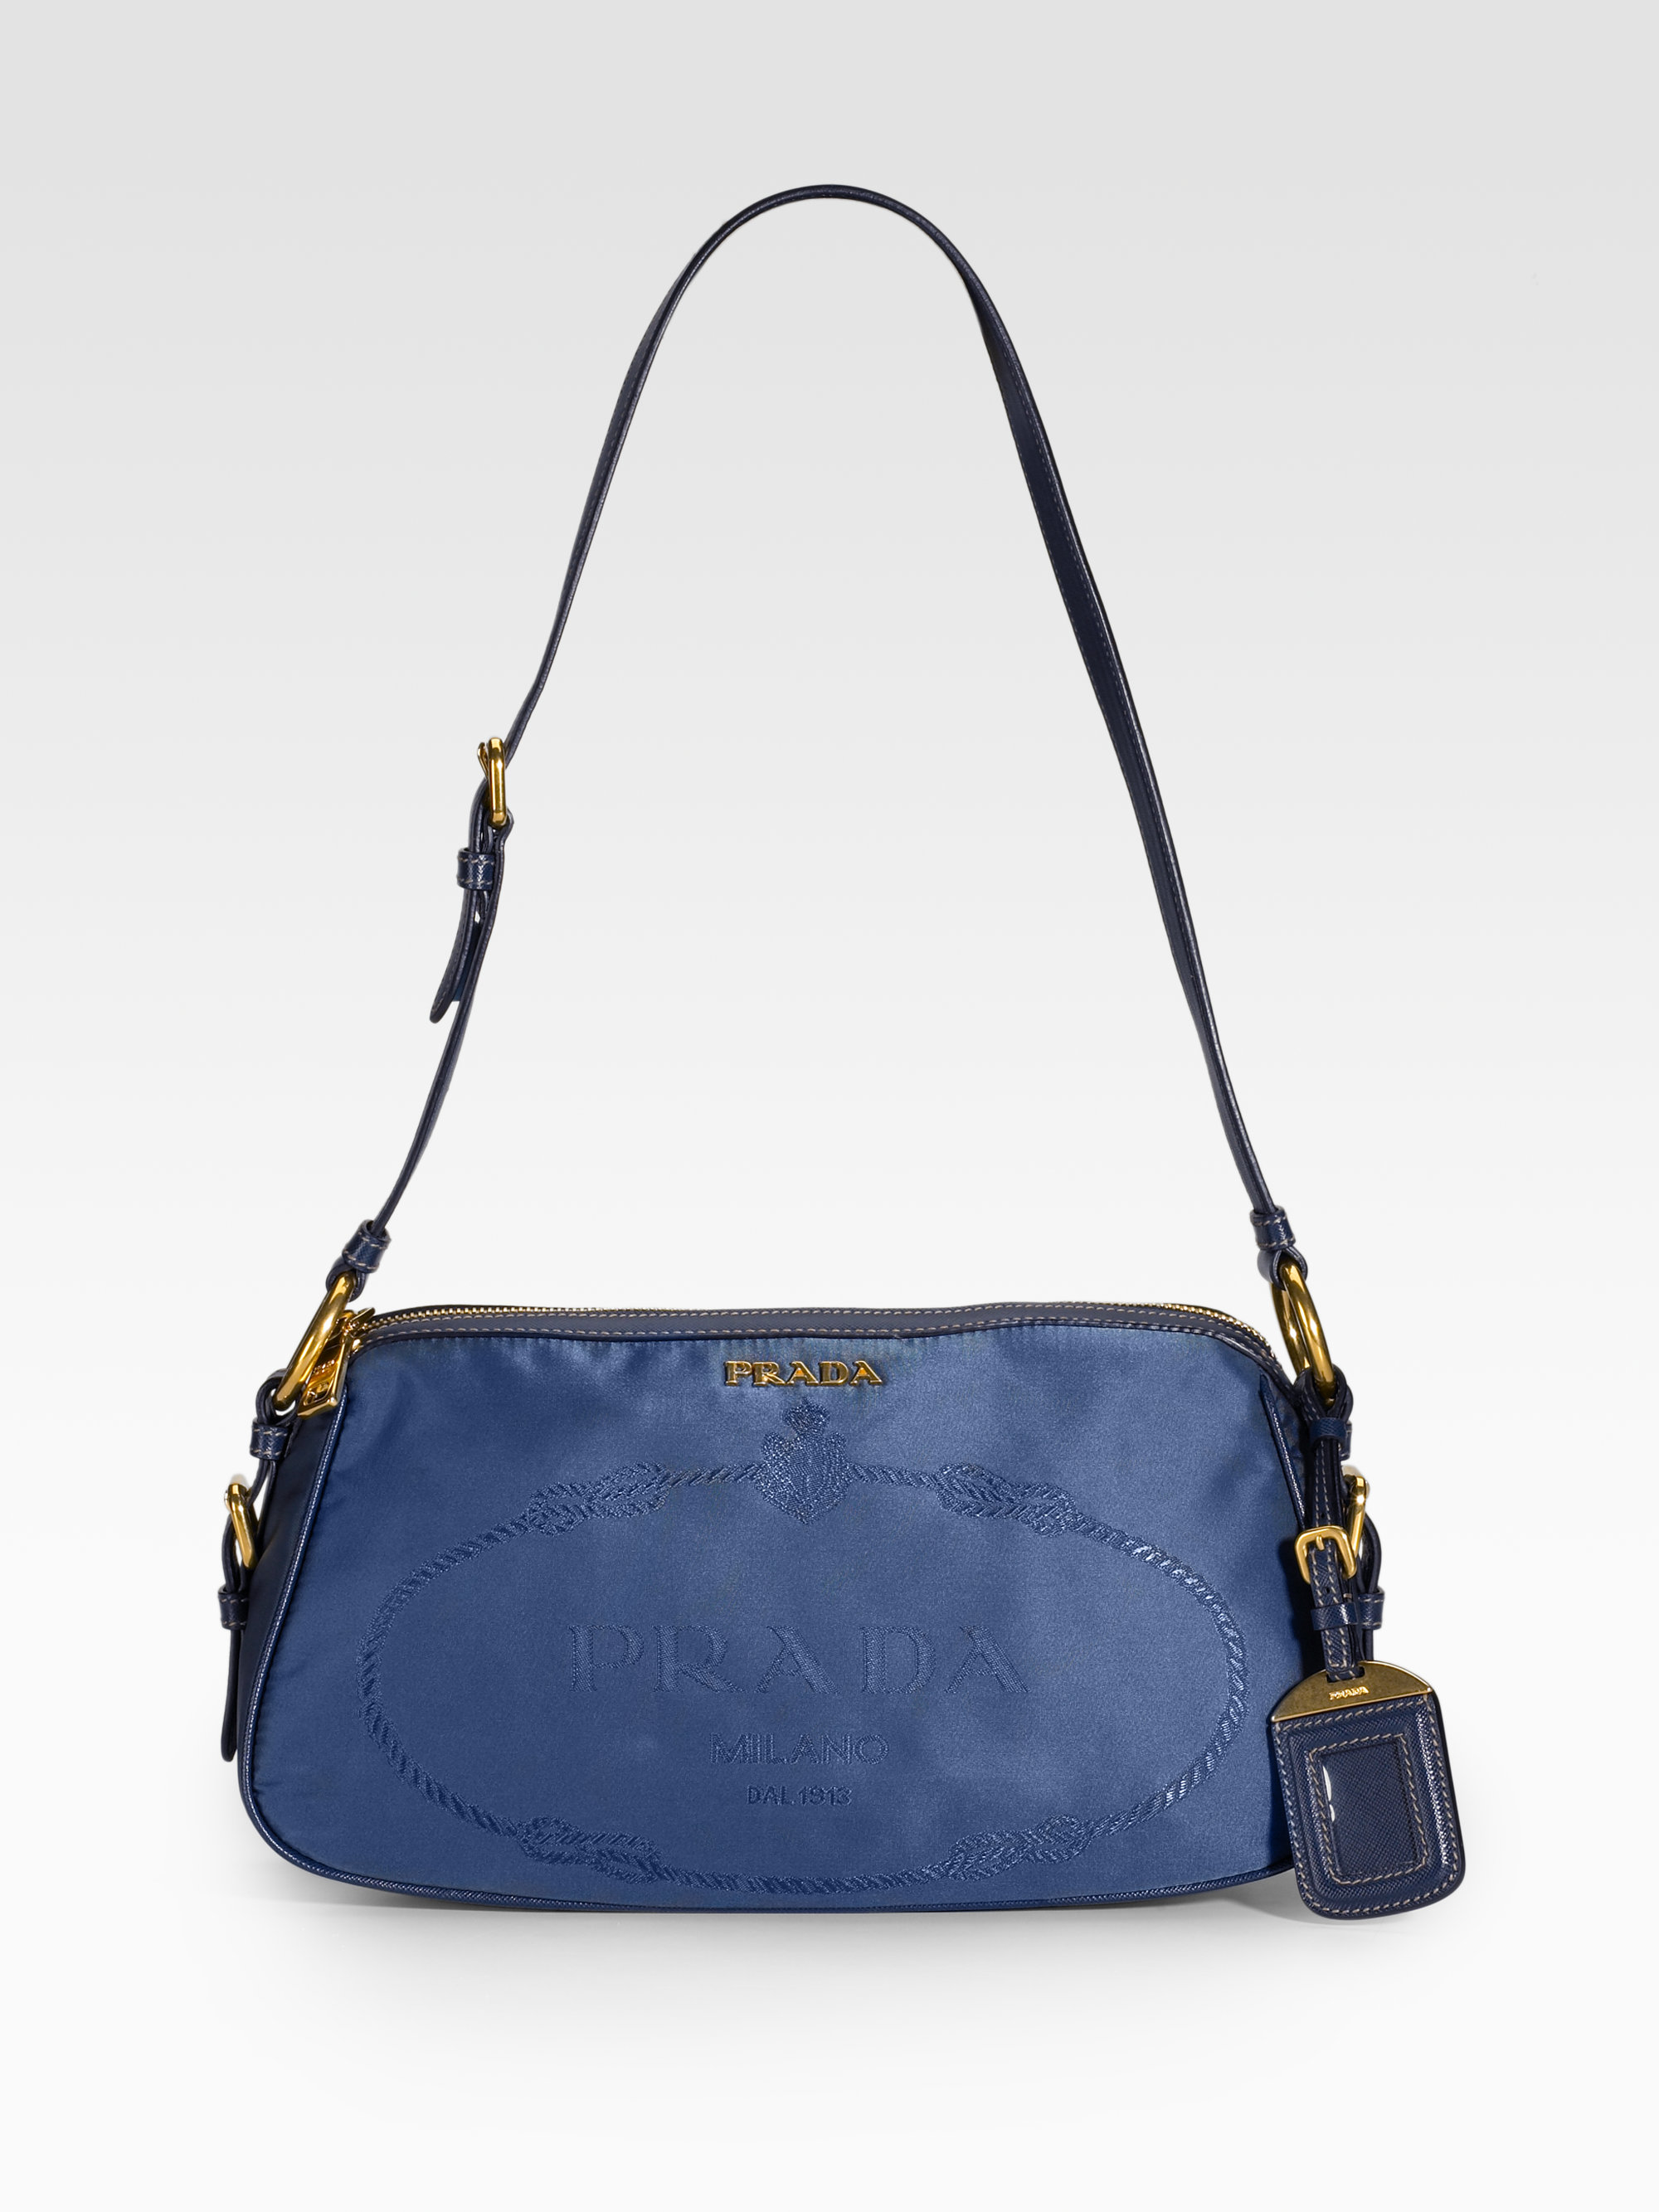 Prada Nylon Saffiano Leather Shoulder Bag in Blue (black) | Lyst